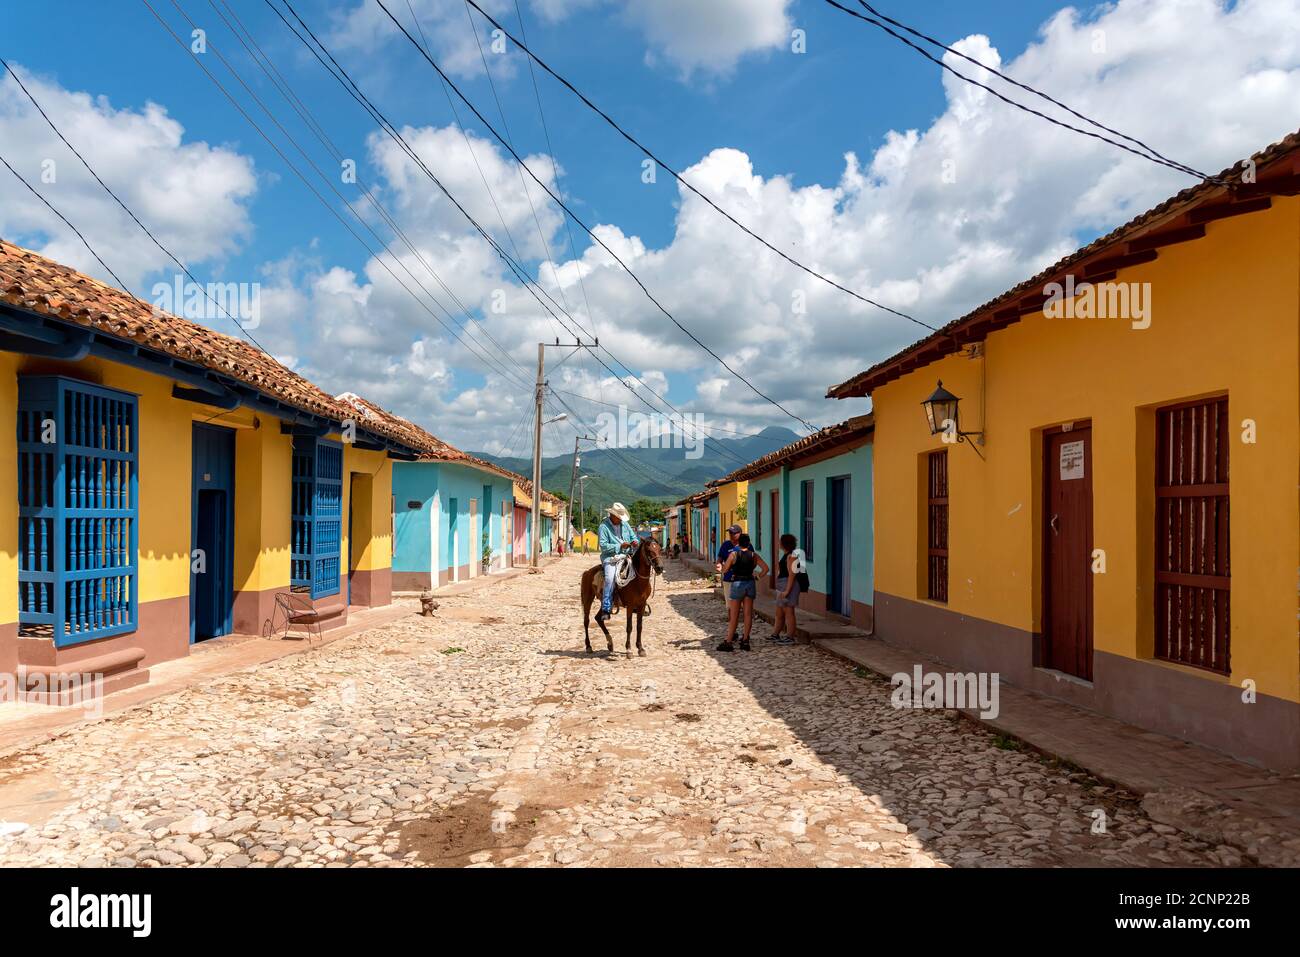 24 août 2019 : homme à cheval dans les rues colorées de Trinidad. Trinité-et-Cuba Banque D'Images